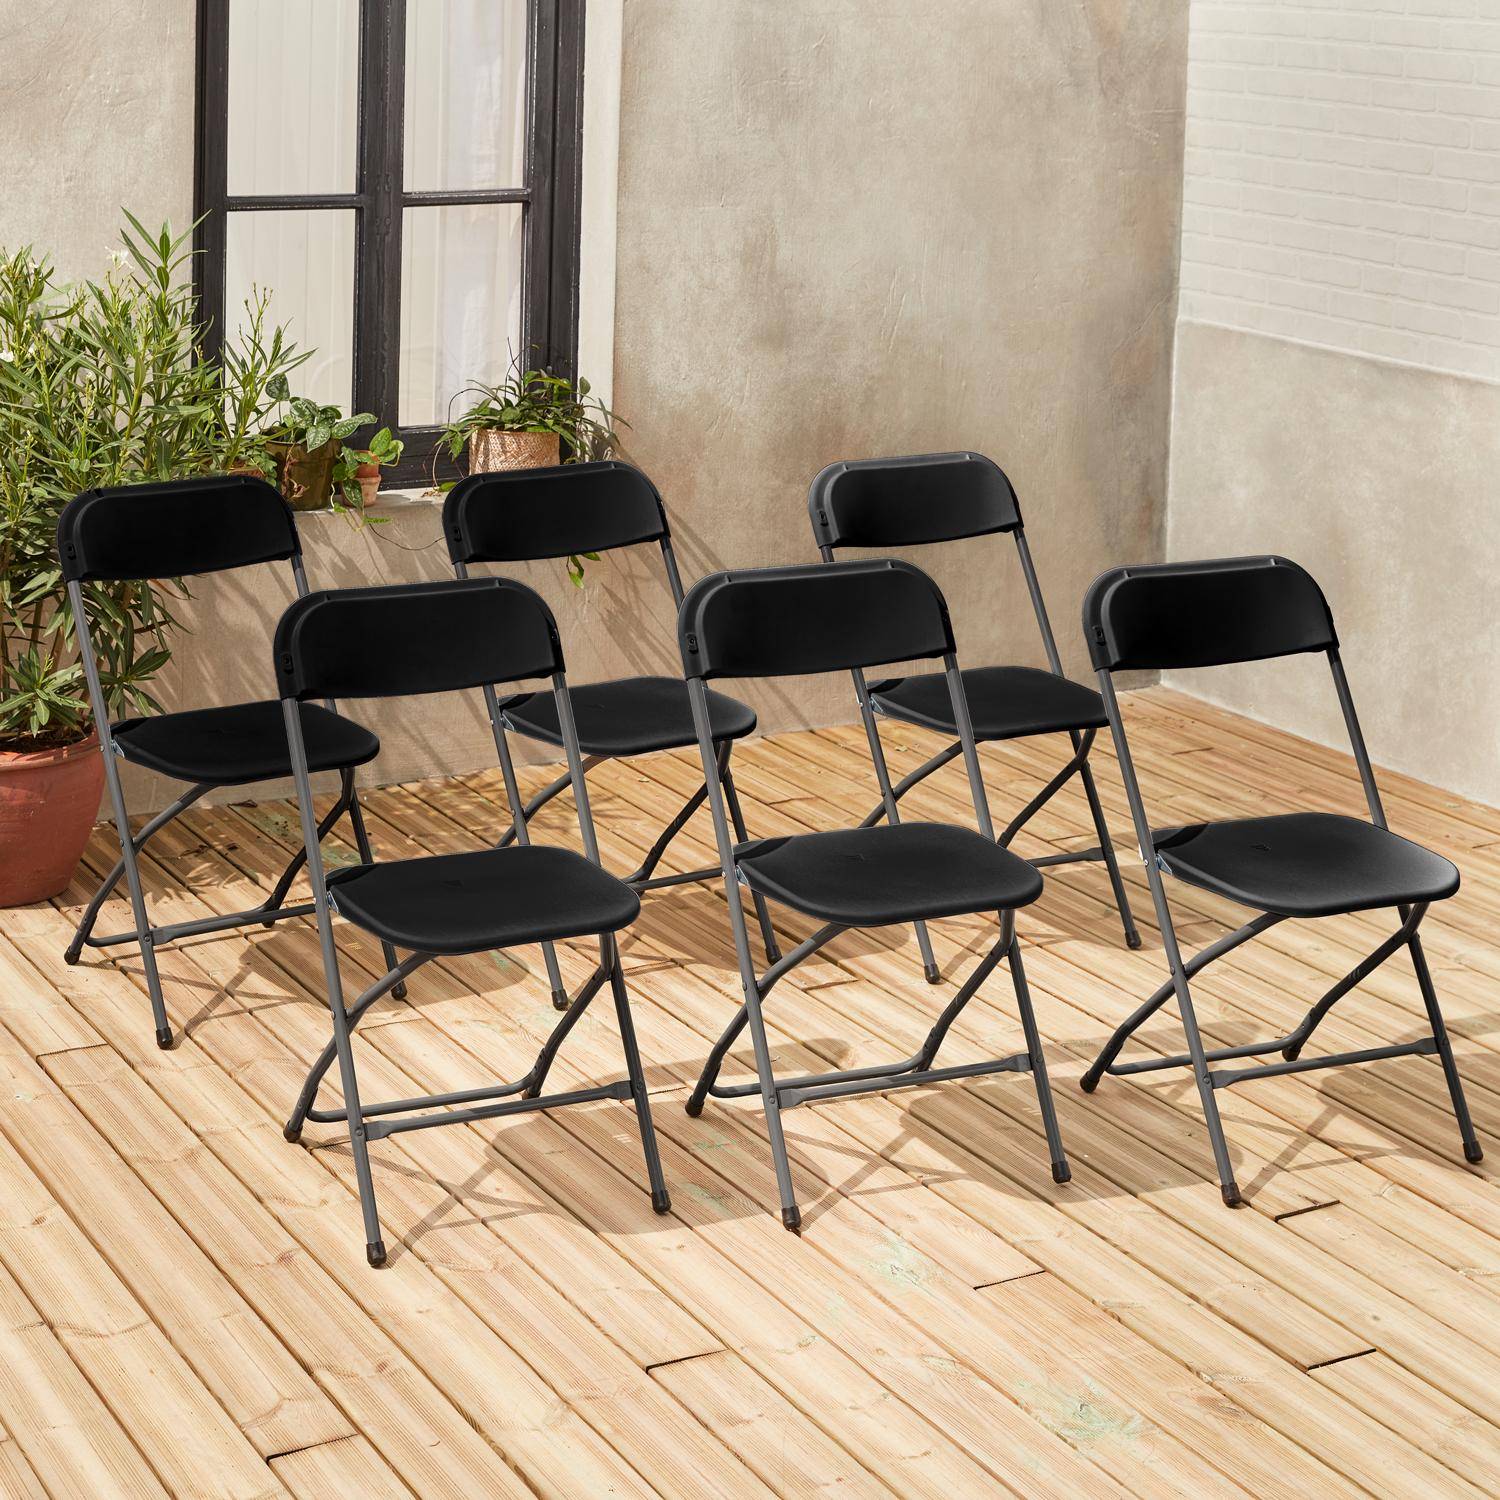  Chaises de réception pliantes – Fiesta – 6 chaises d'appoint en plastique gris foncé et métal Photo1